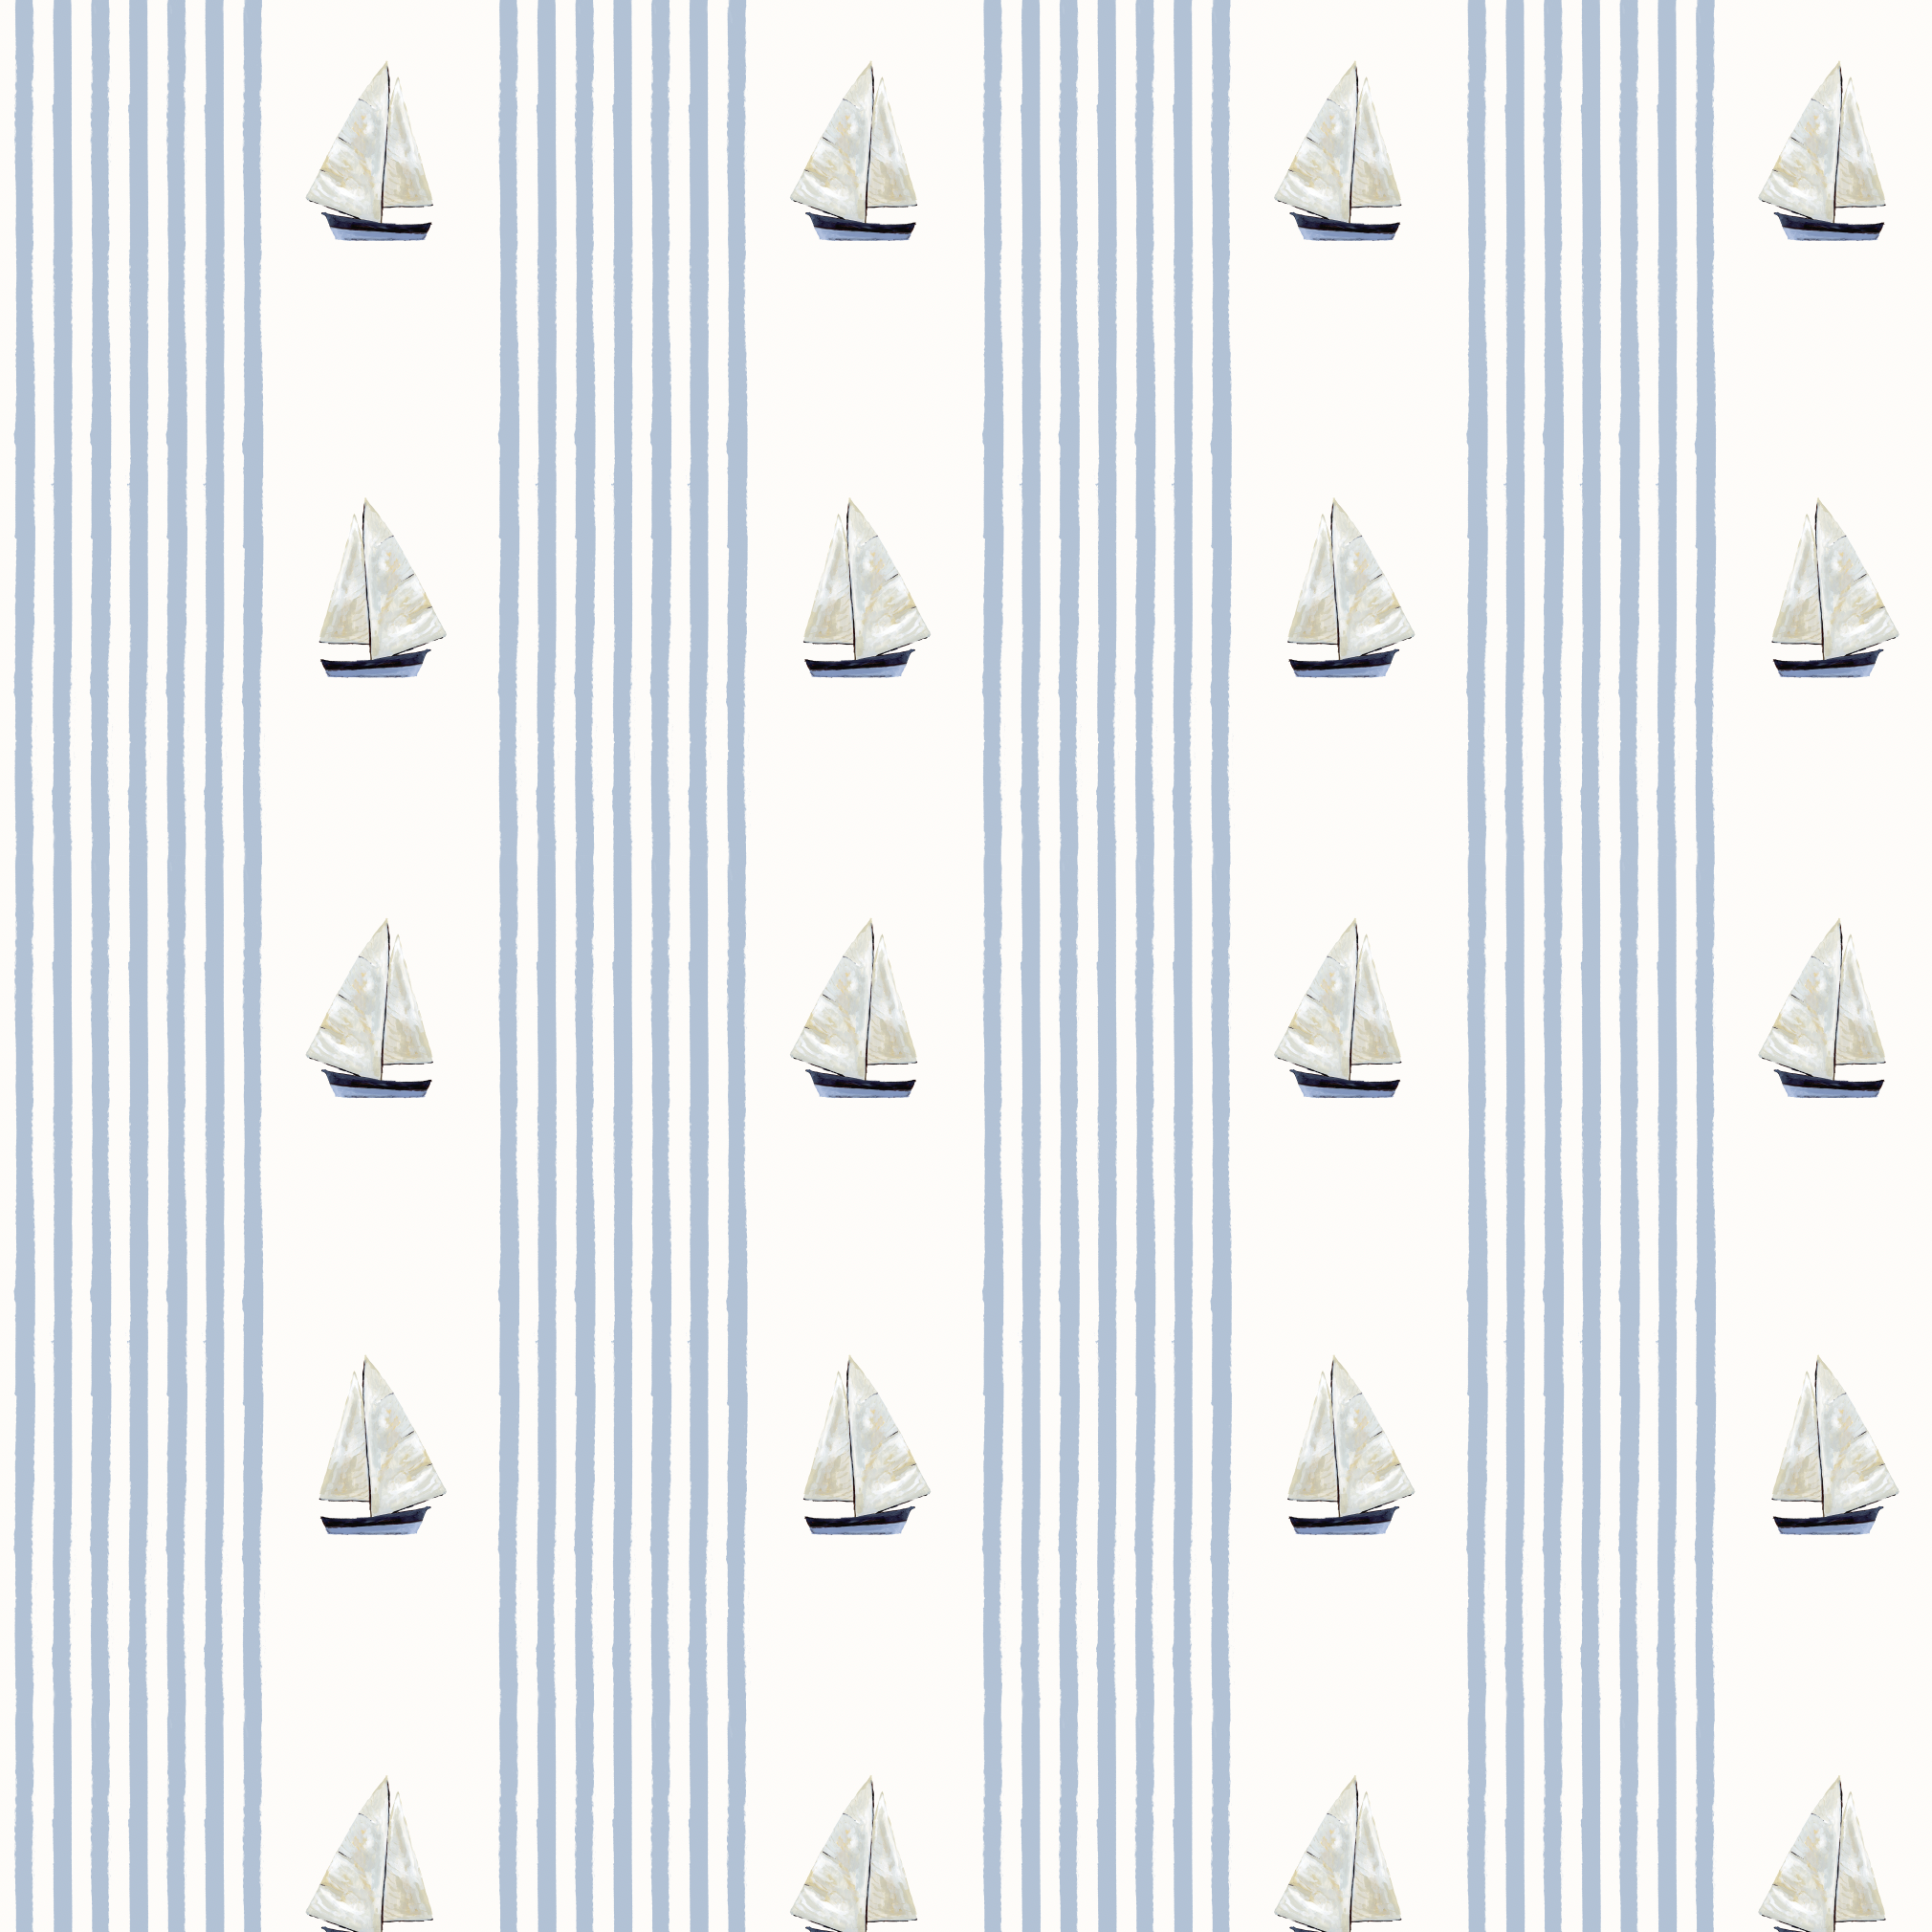 John's Sail- Fabric